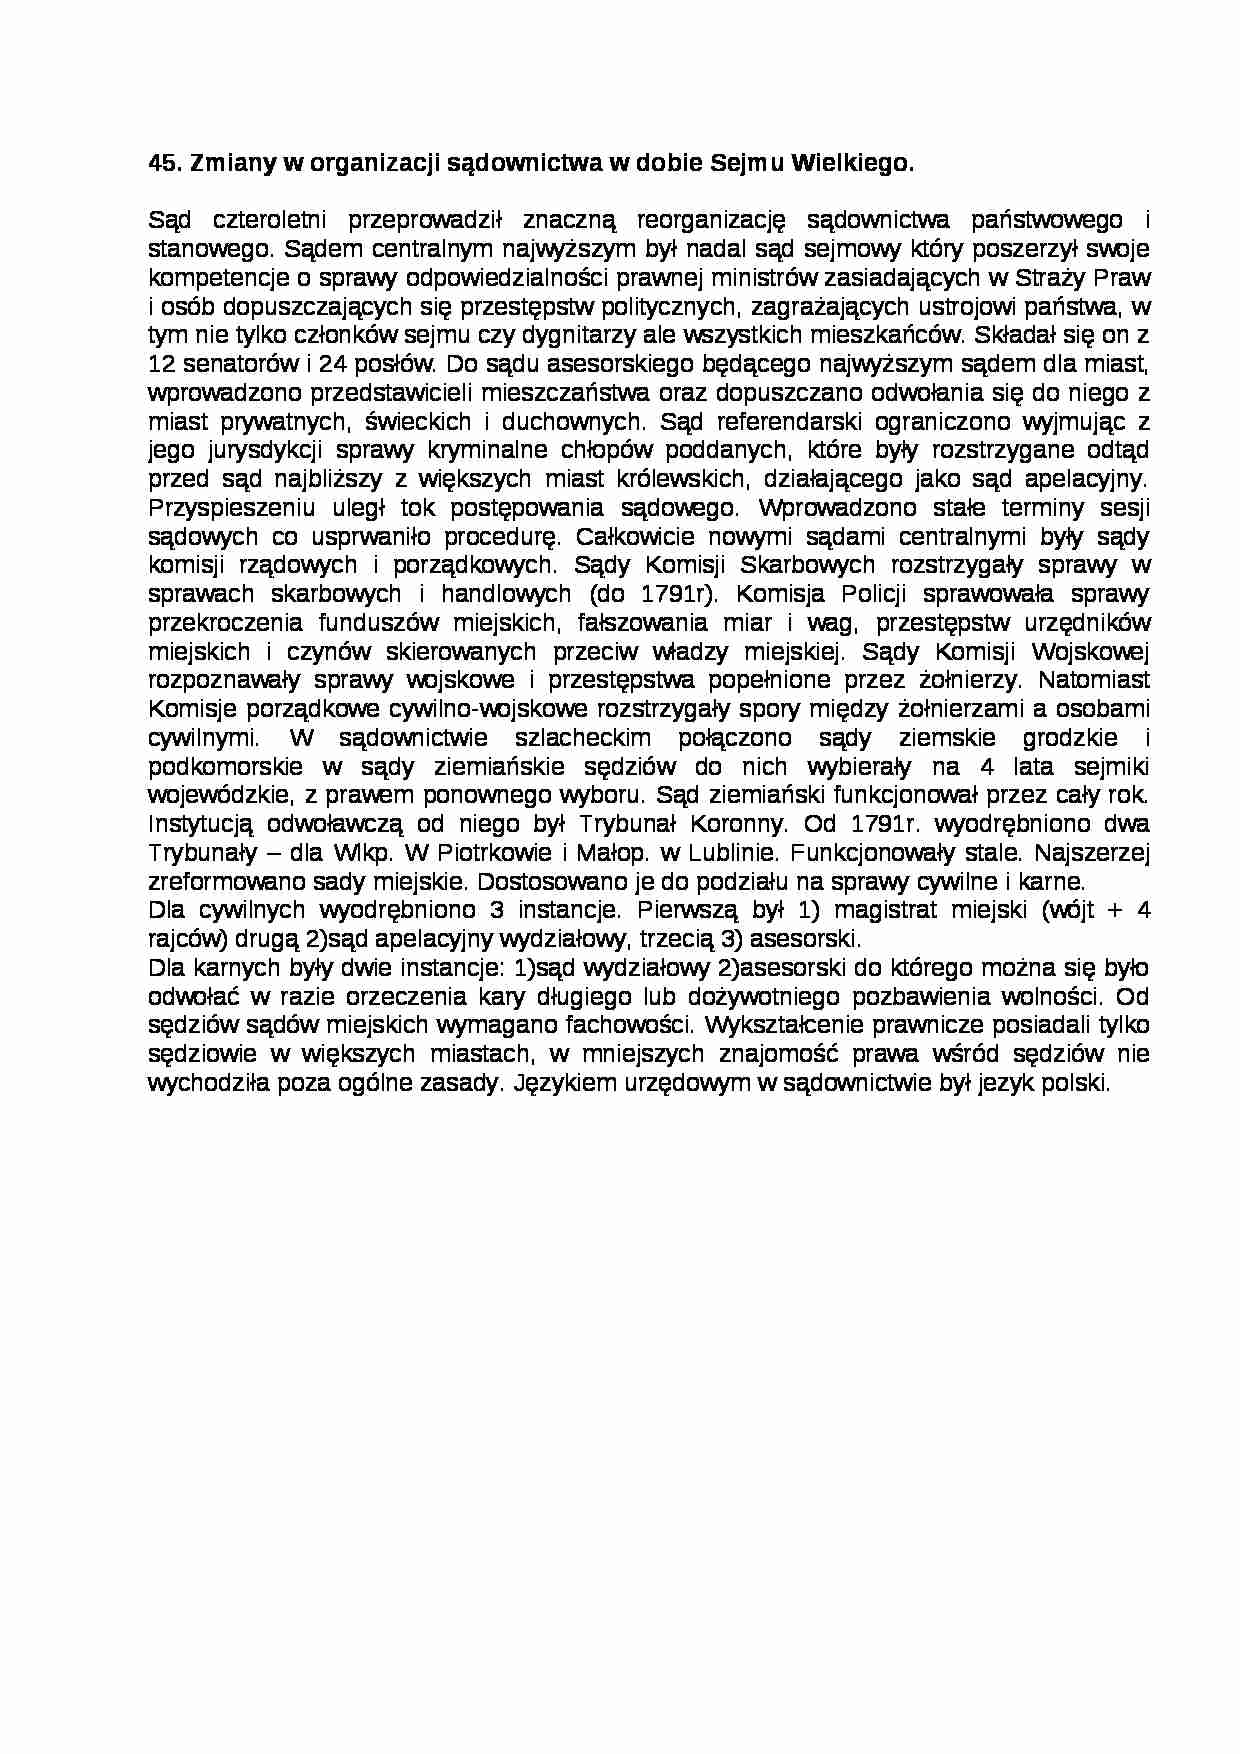 Zmiany w organizacji sądownictwa, Sejm Wielki - strona 1